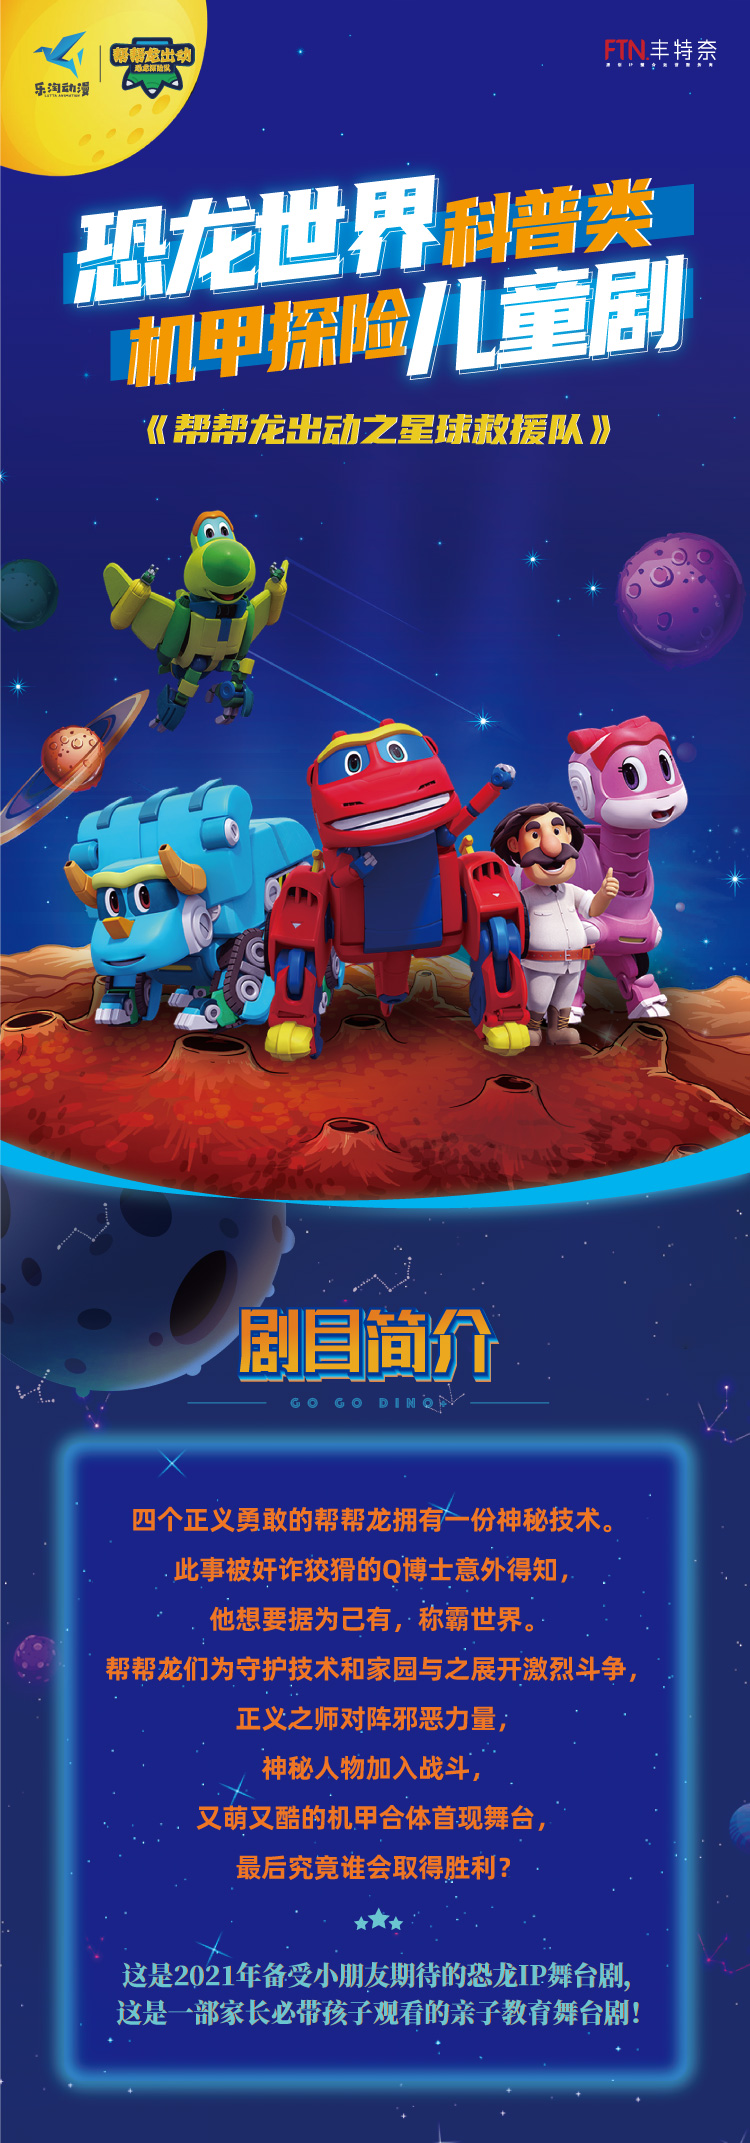 2021恐龙世界科普类儿童剧《帮帮龙出动之星球救援队》-郑州站